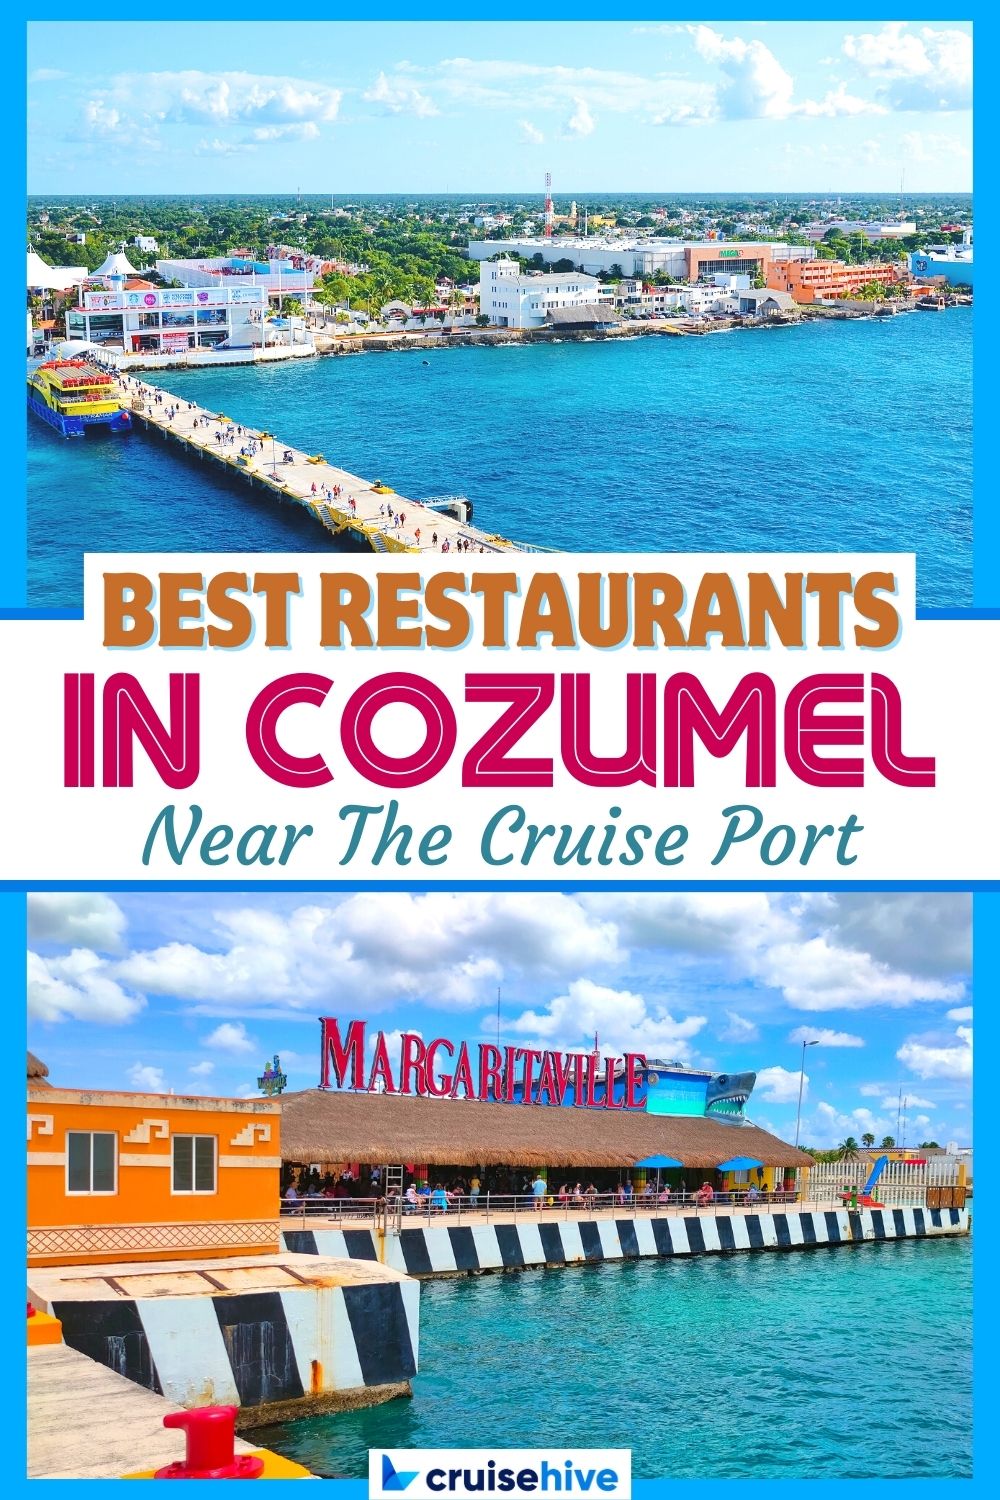 Best Restaurants in Cozumel Near the Cruise Port